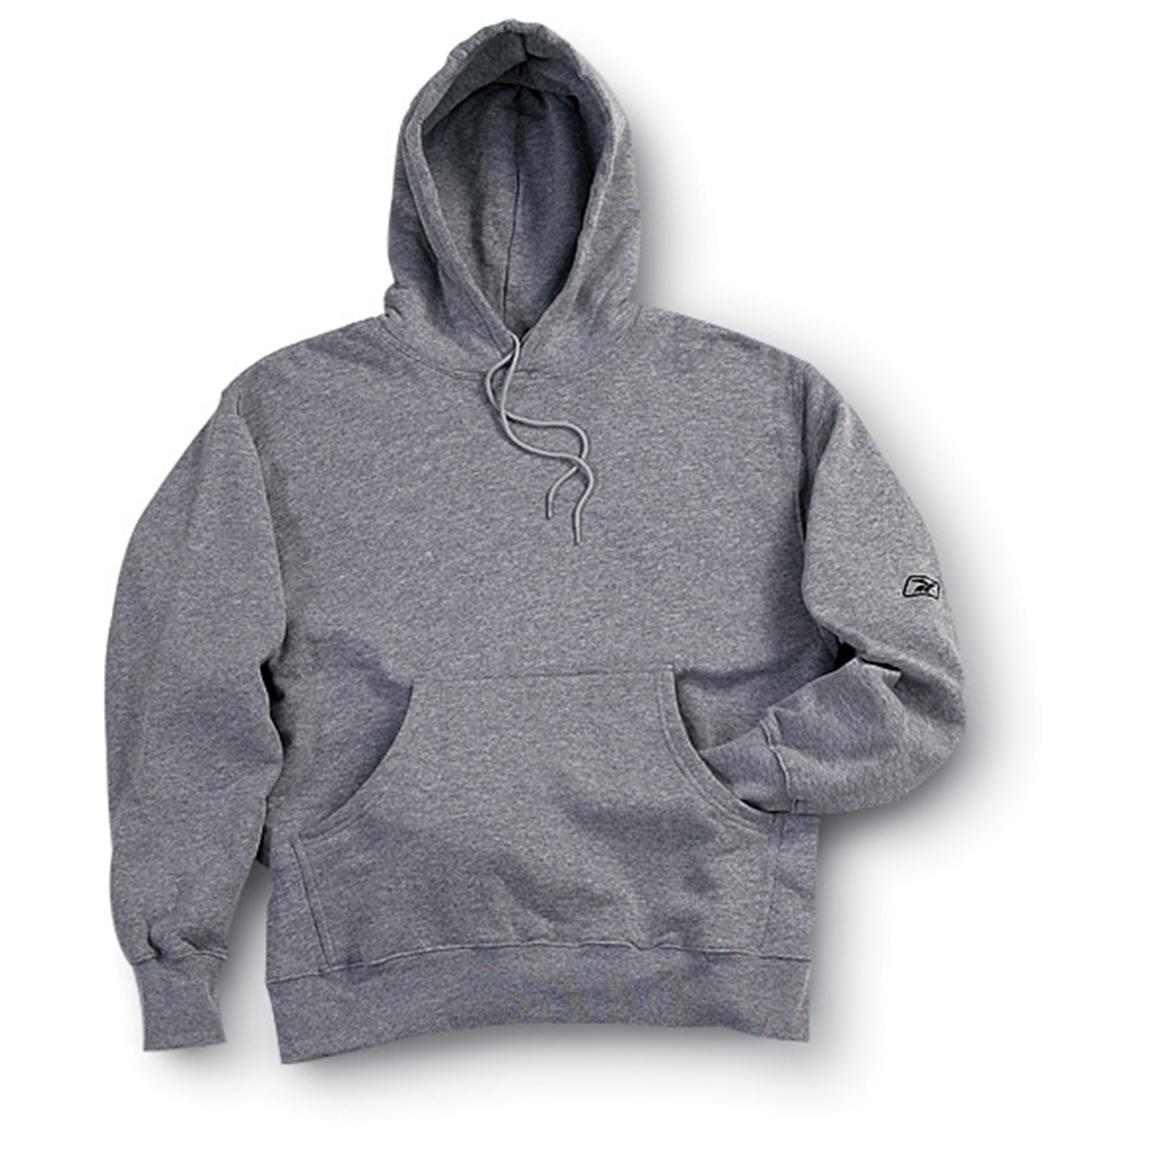 Reebok® Hooded Sweatshirt - 90440, at Sportsman's Guide